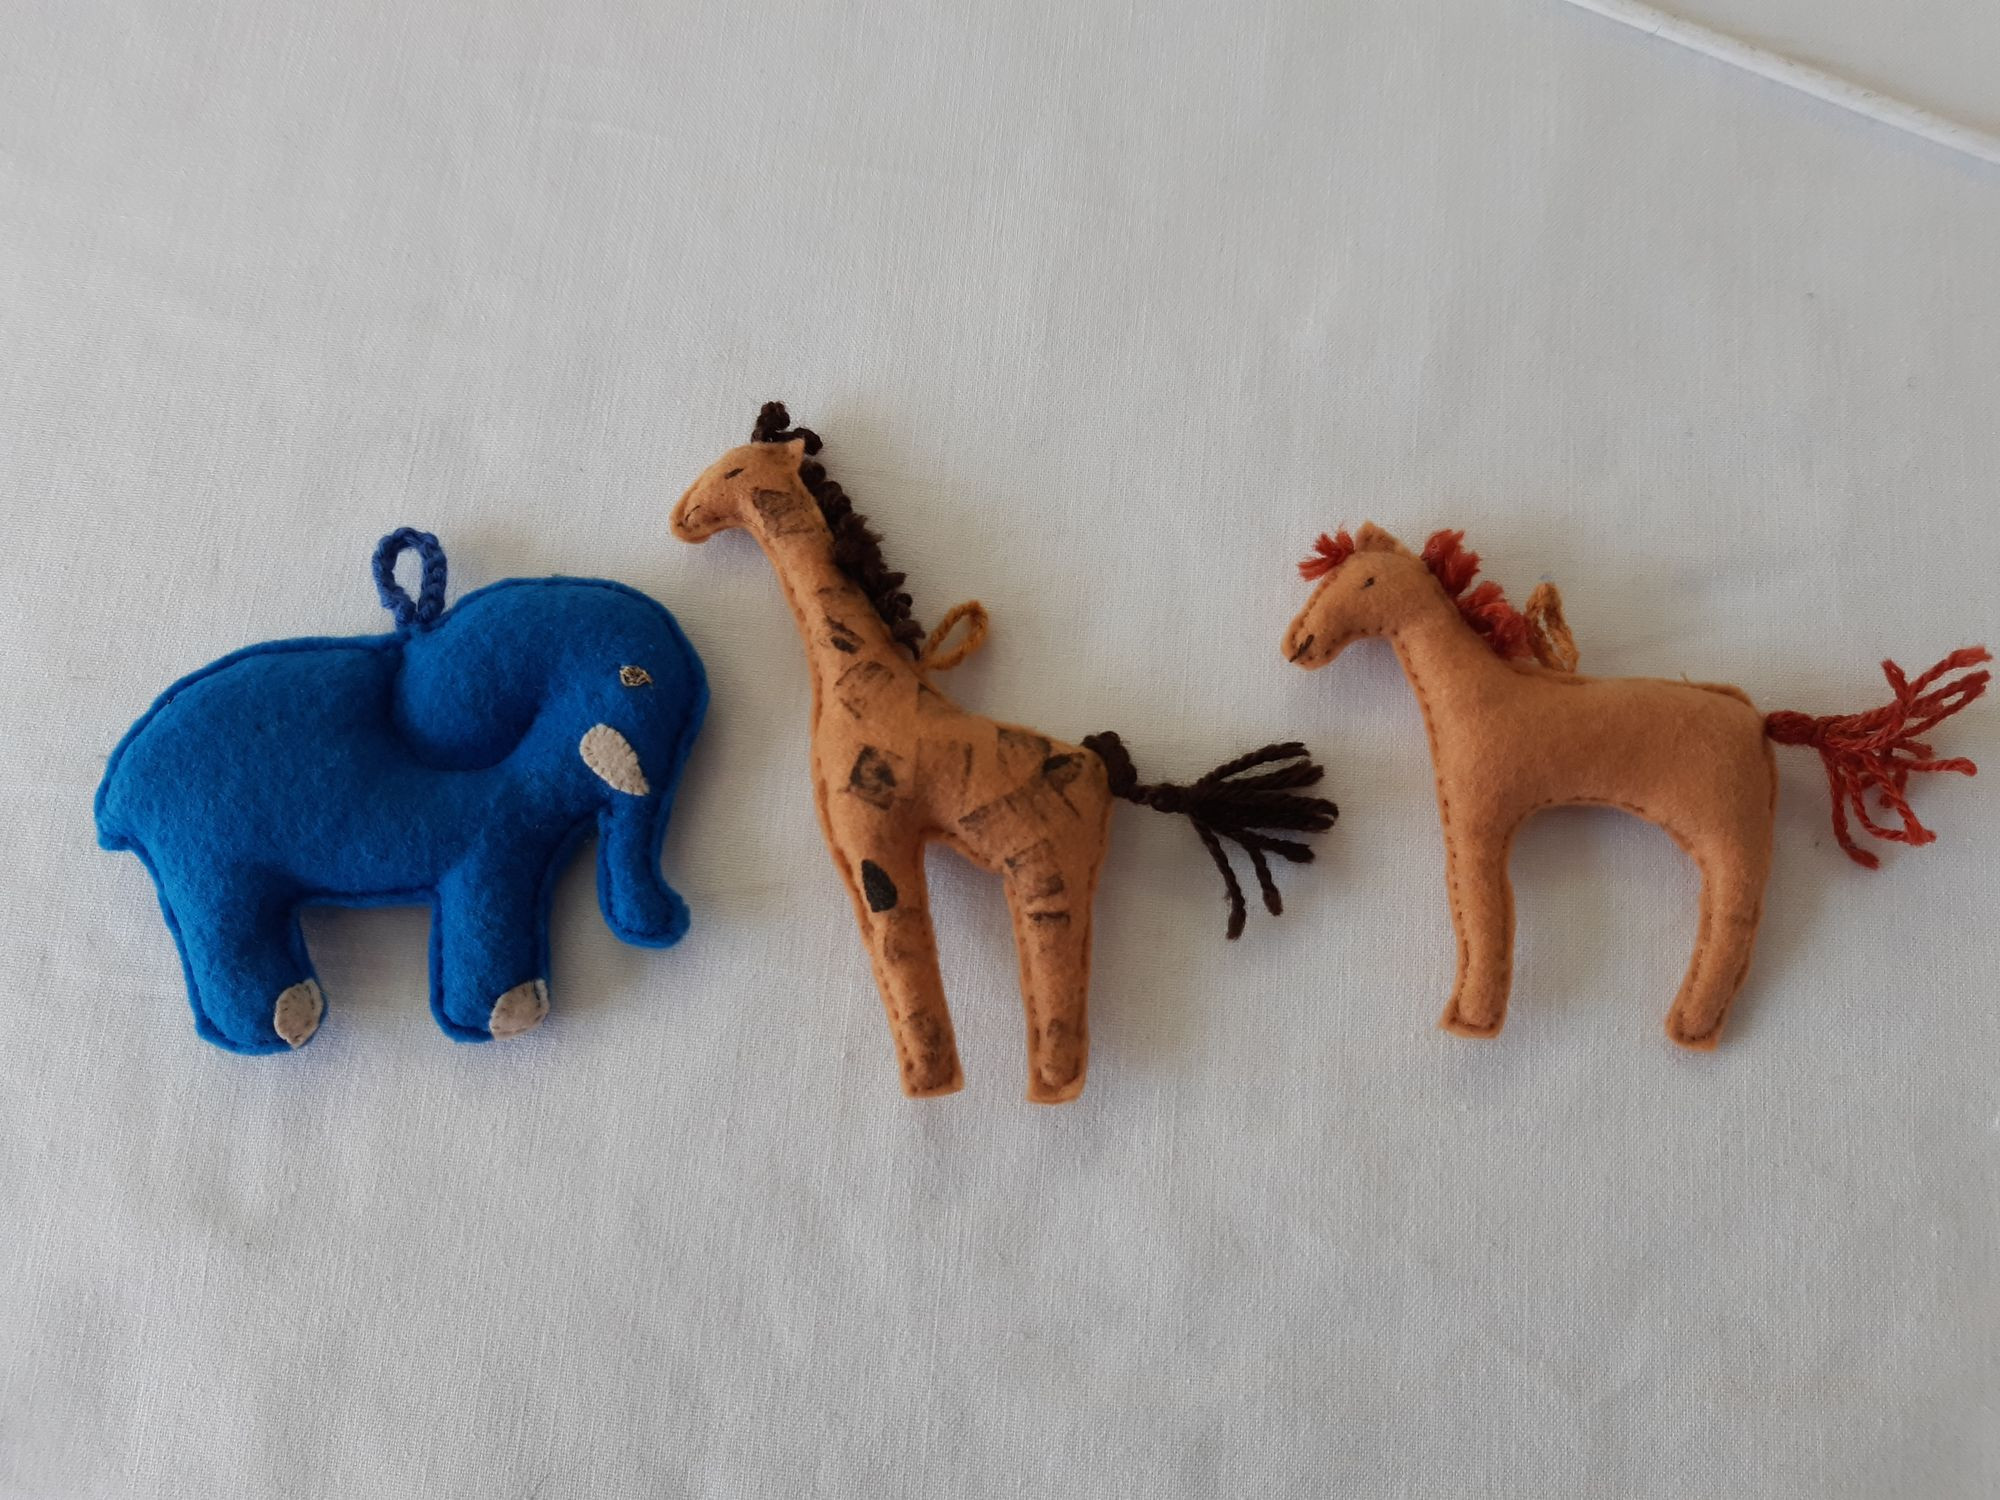 selbst gestaltete Filzanhänger: Elefant, Giraffe und Pferd